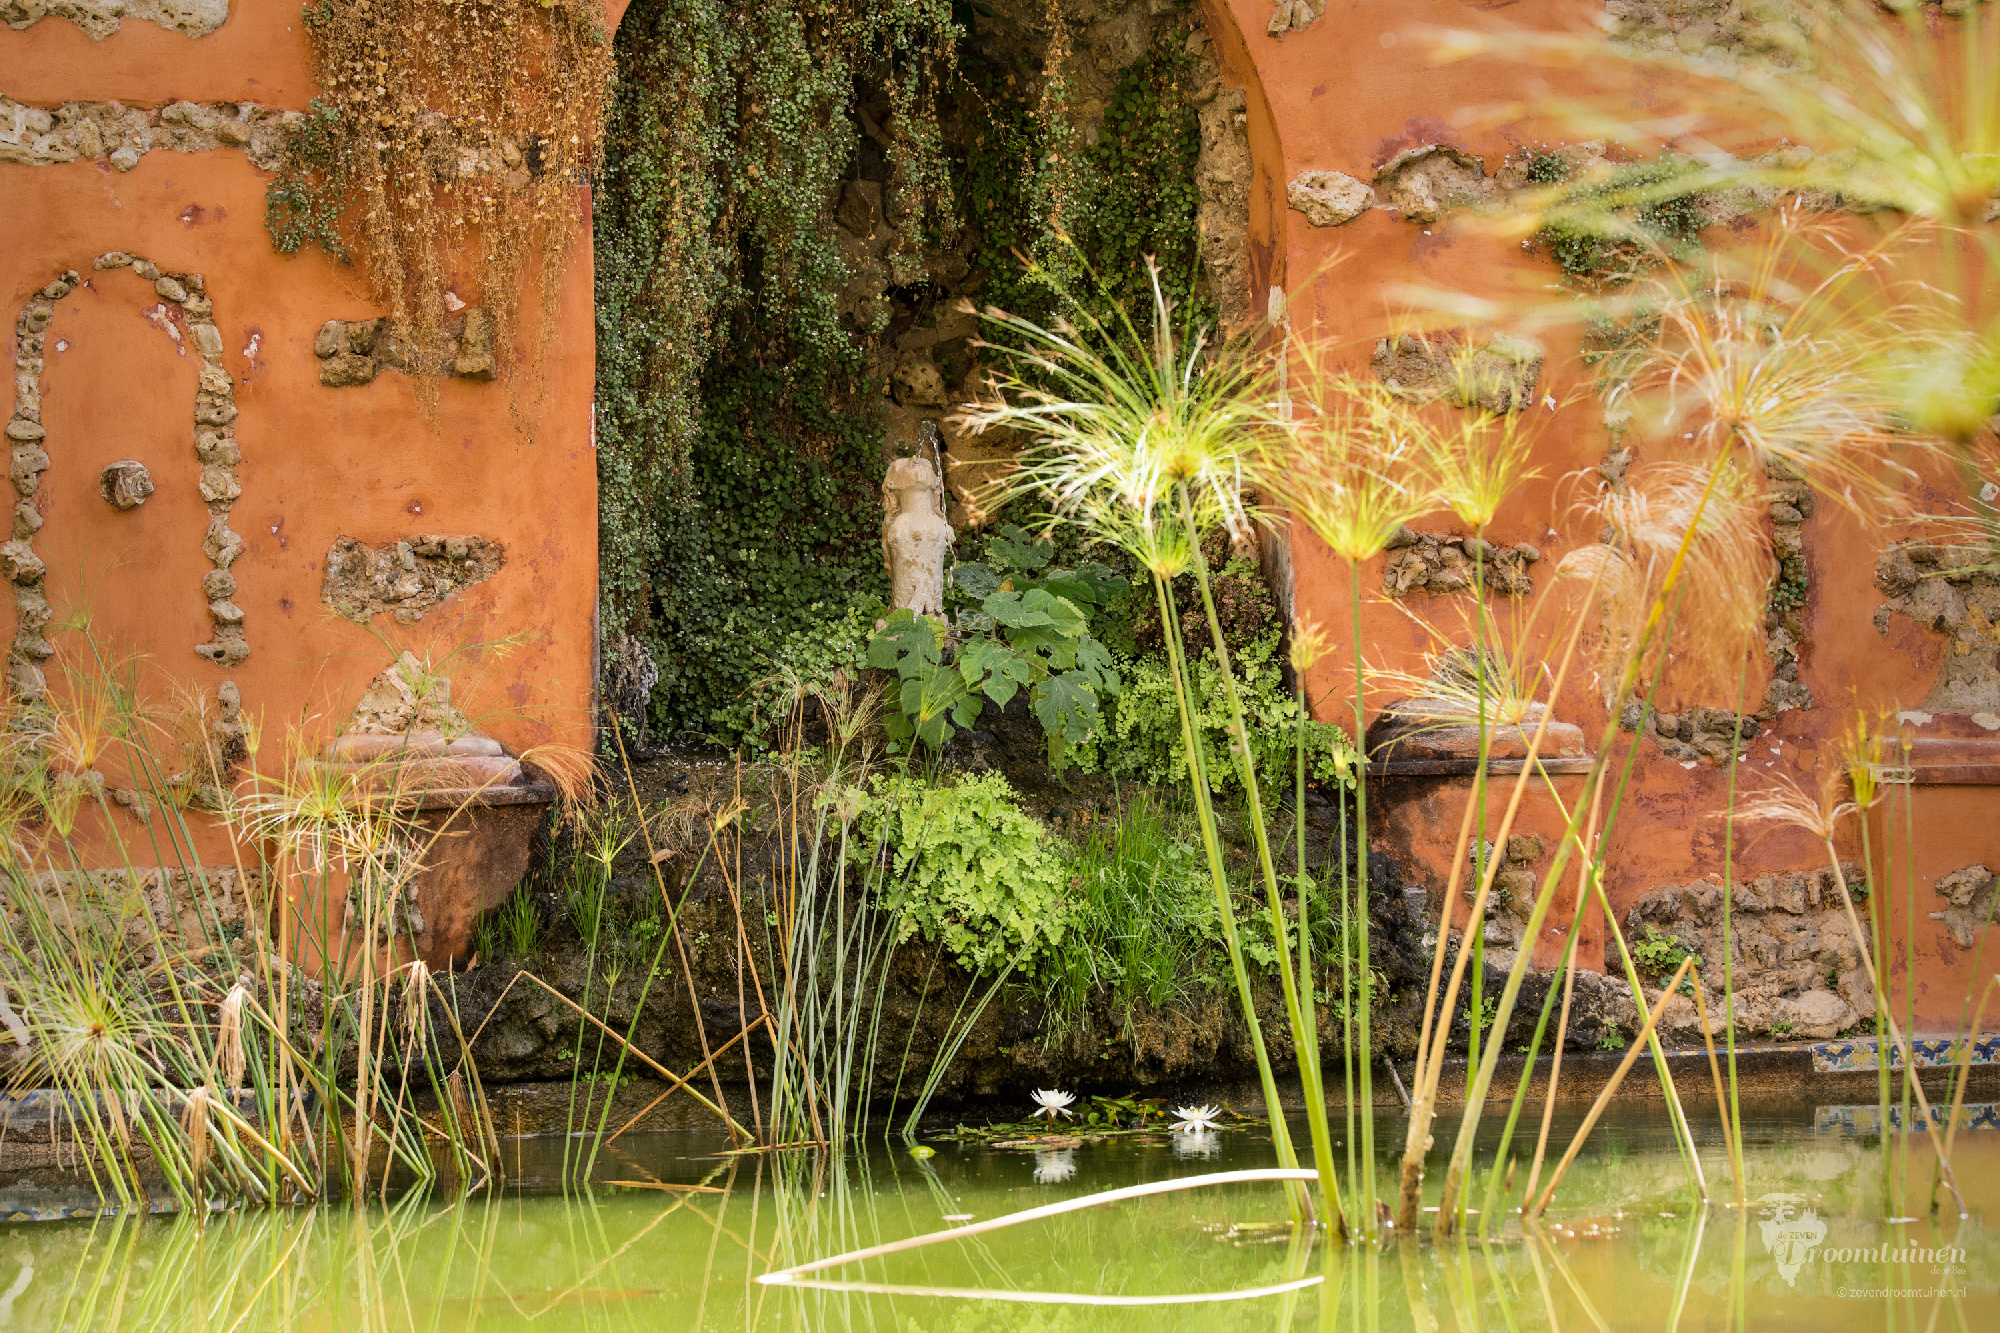 Een waterfontein in de tuin van Real Alcázar, het koninklijke paleis van Sevilla, Spanje. Ik vind het bijzonder om te zien hoe de natuur de scene verrassend maakt en de verwering juist voor schoonheid heeft gezorgd.